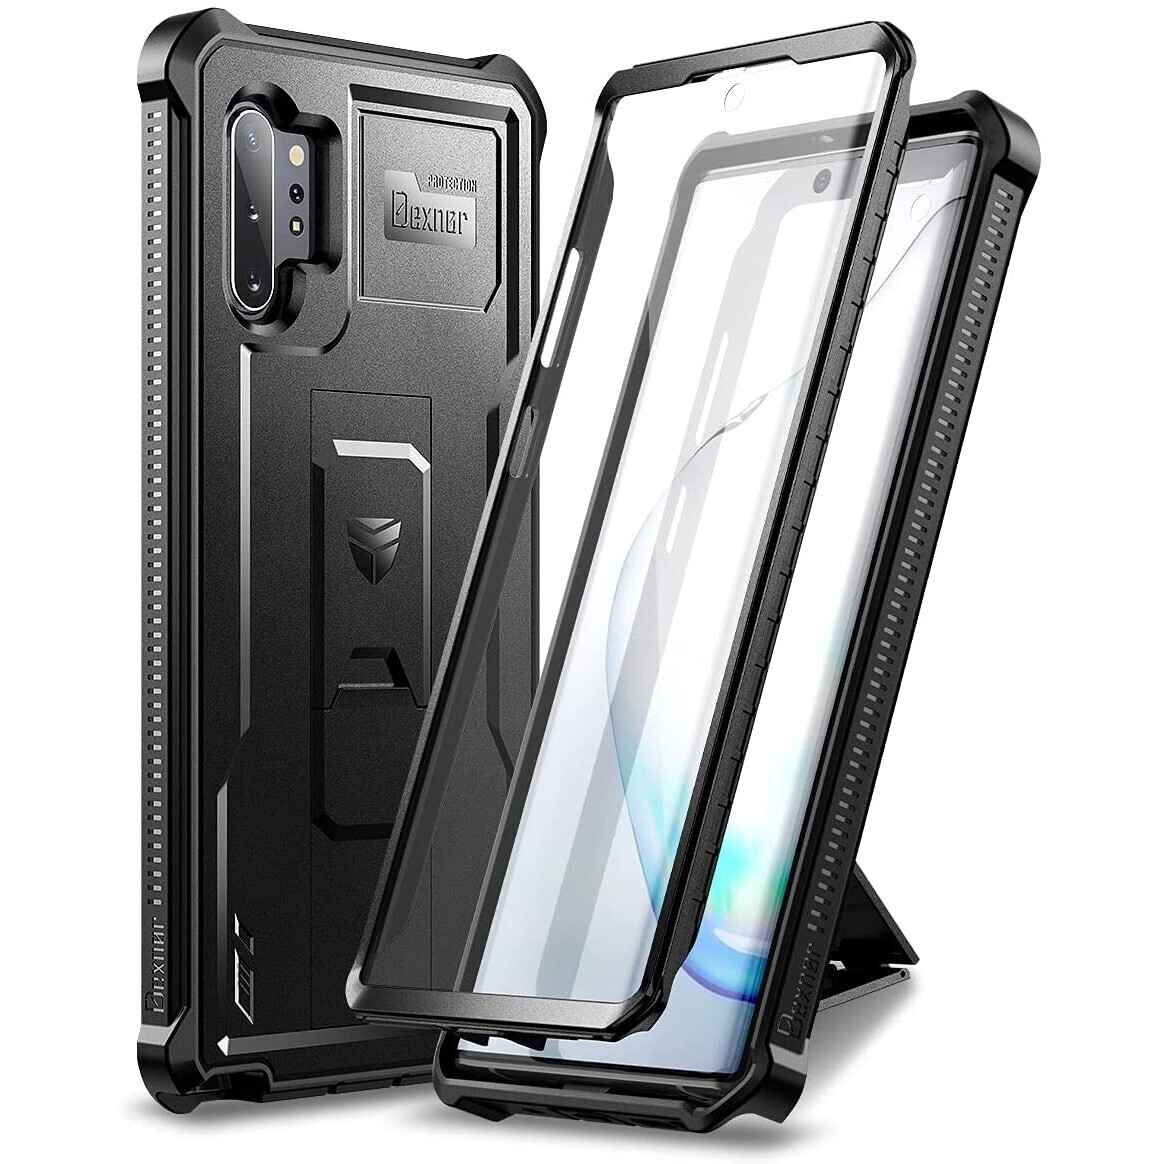 Case Galaxy Note 10+ Plus c/ Protector de pantalla y soporte Inclinable de Grado Militar en 2 colores